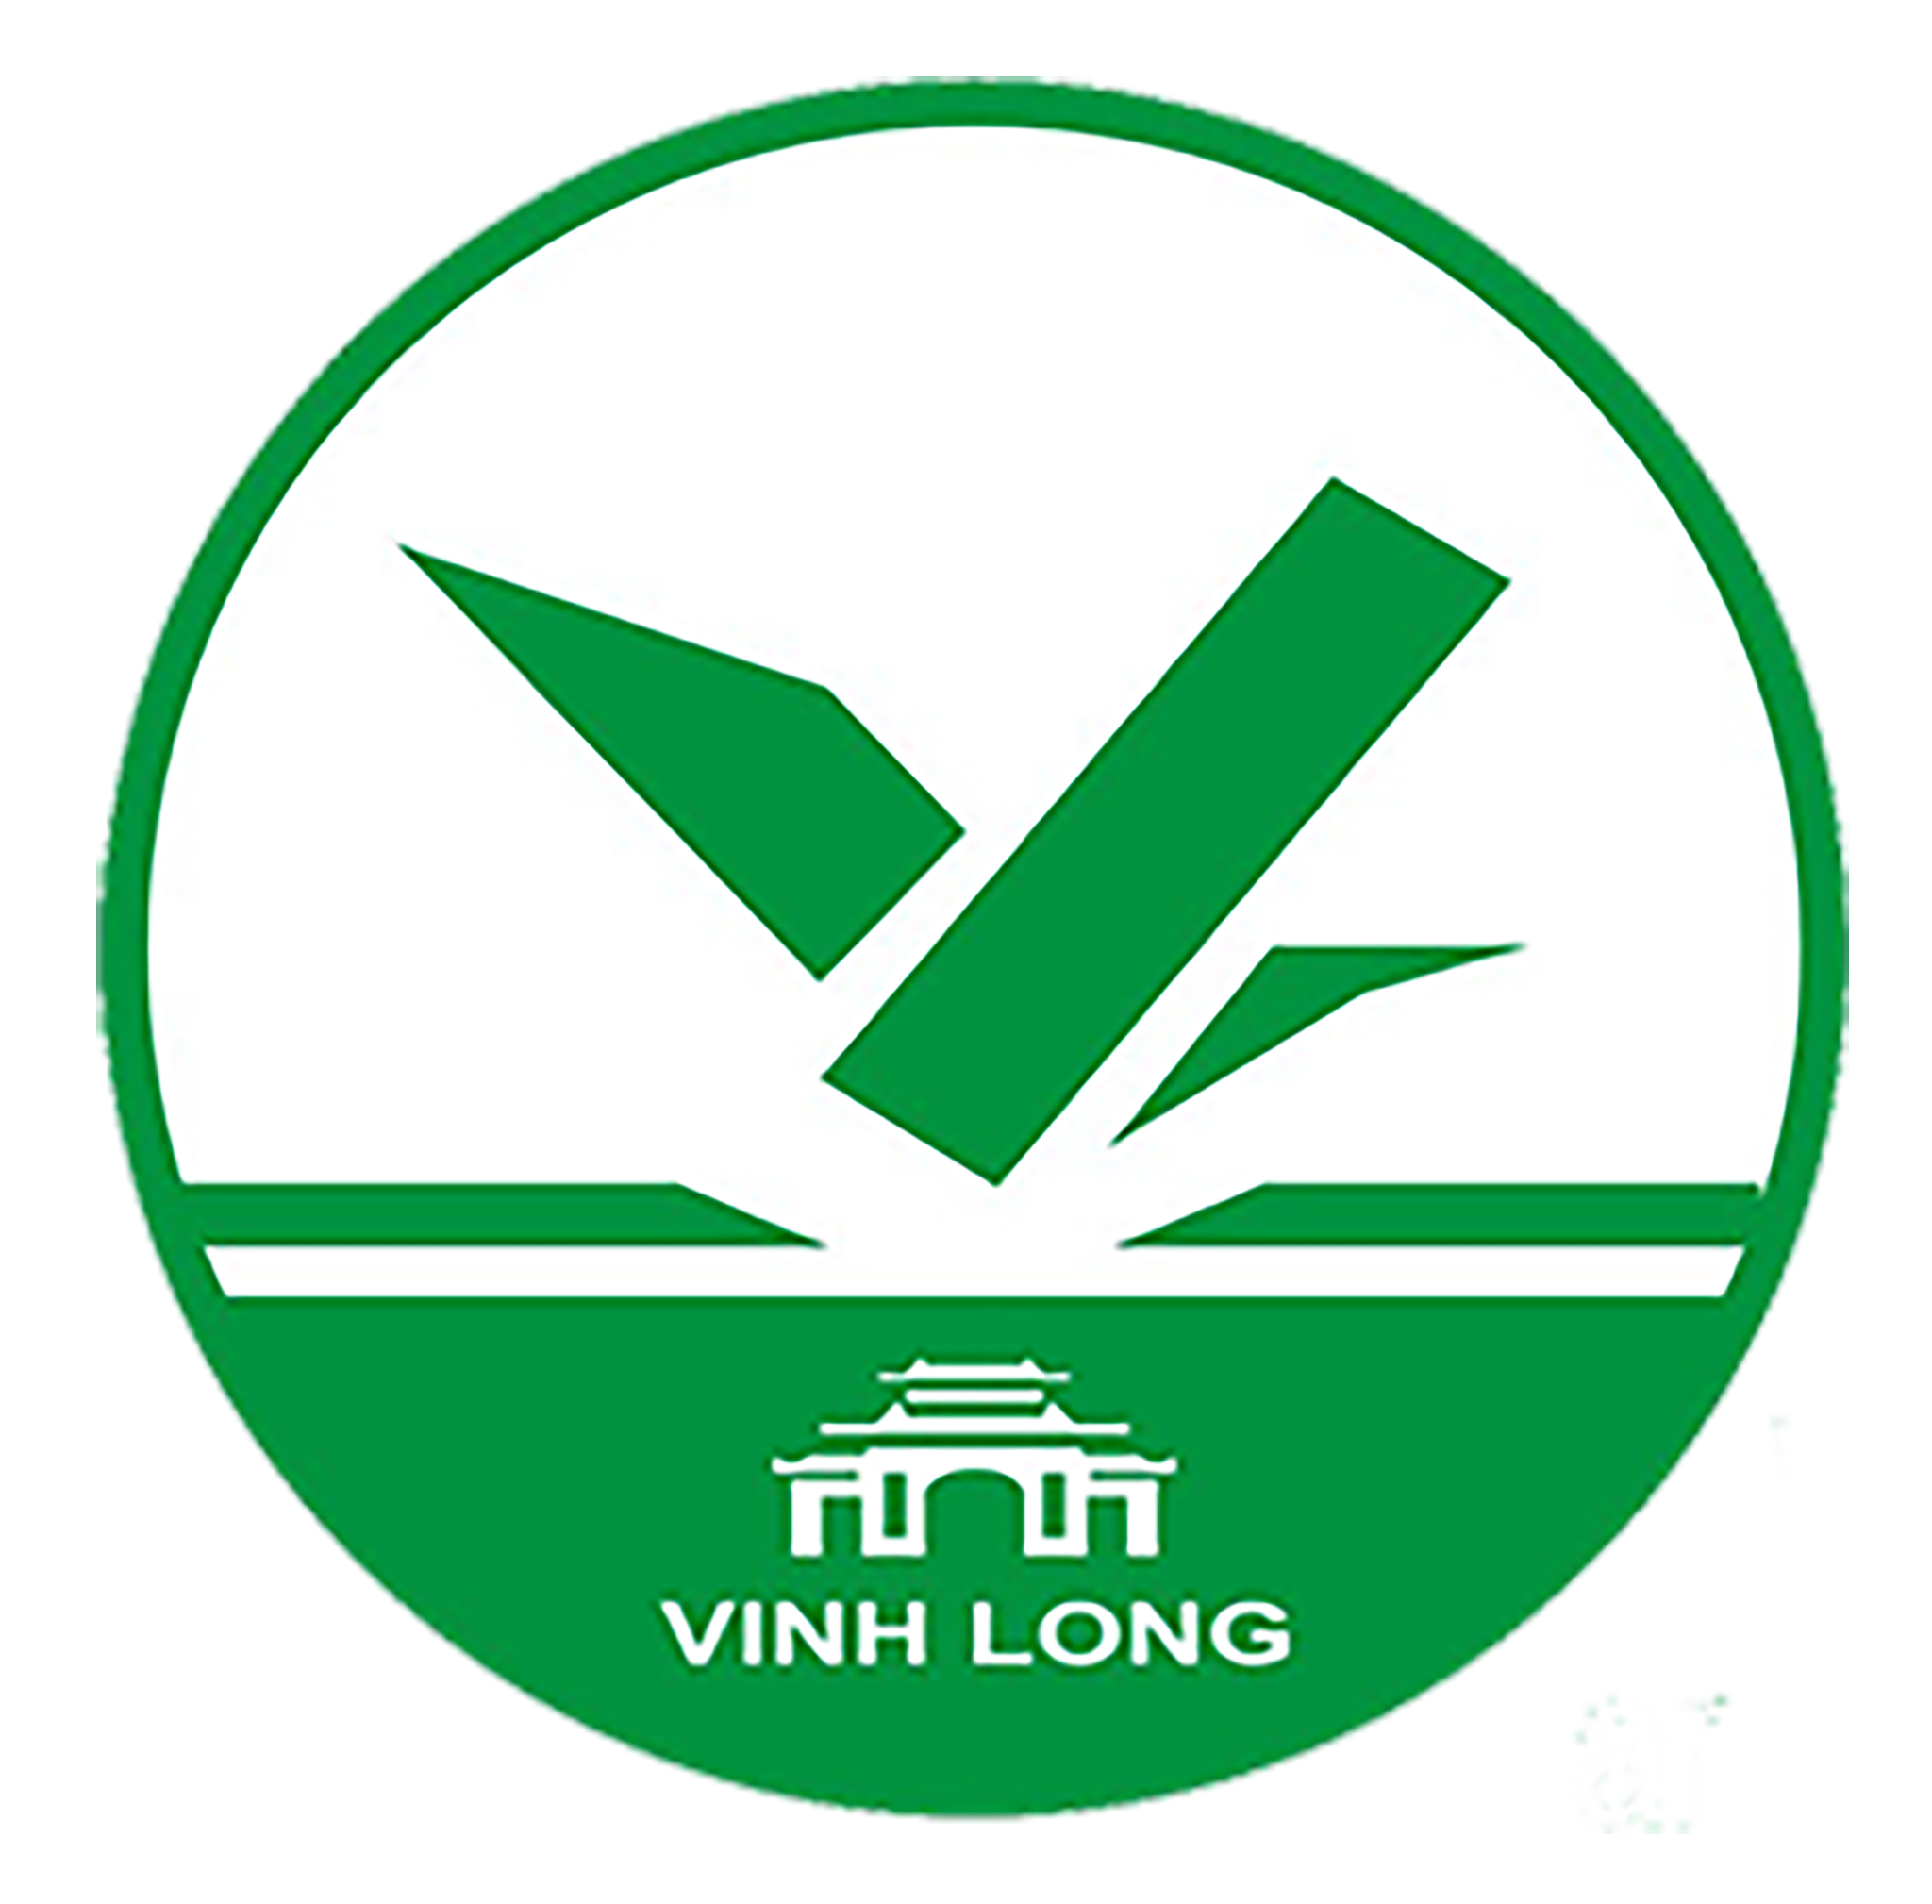 Tạp chí Vietnam Travel "bắt tay" cùng Vĩnh Long kích cầu phát triển du lịch